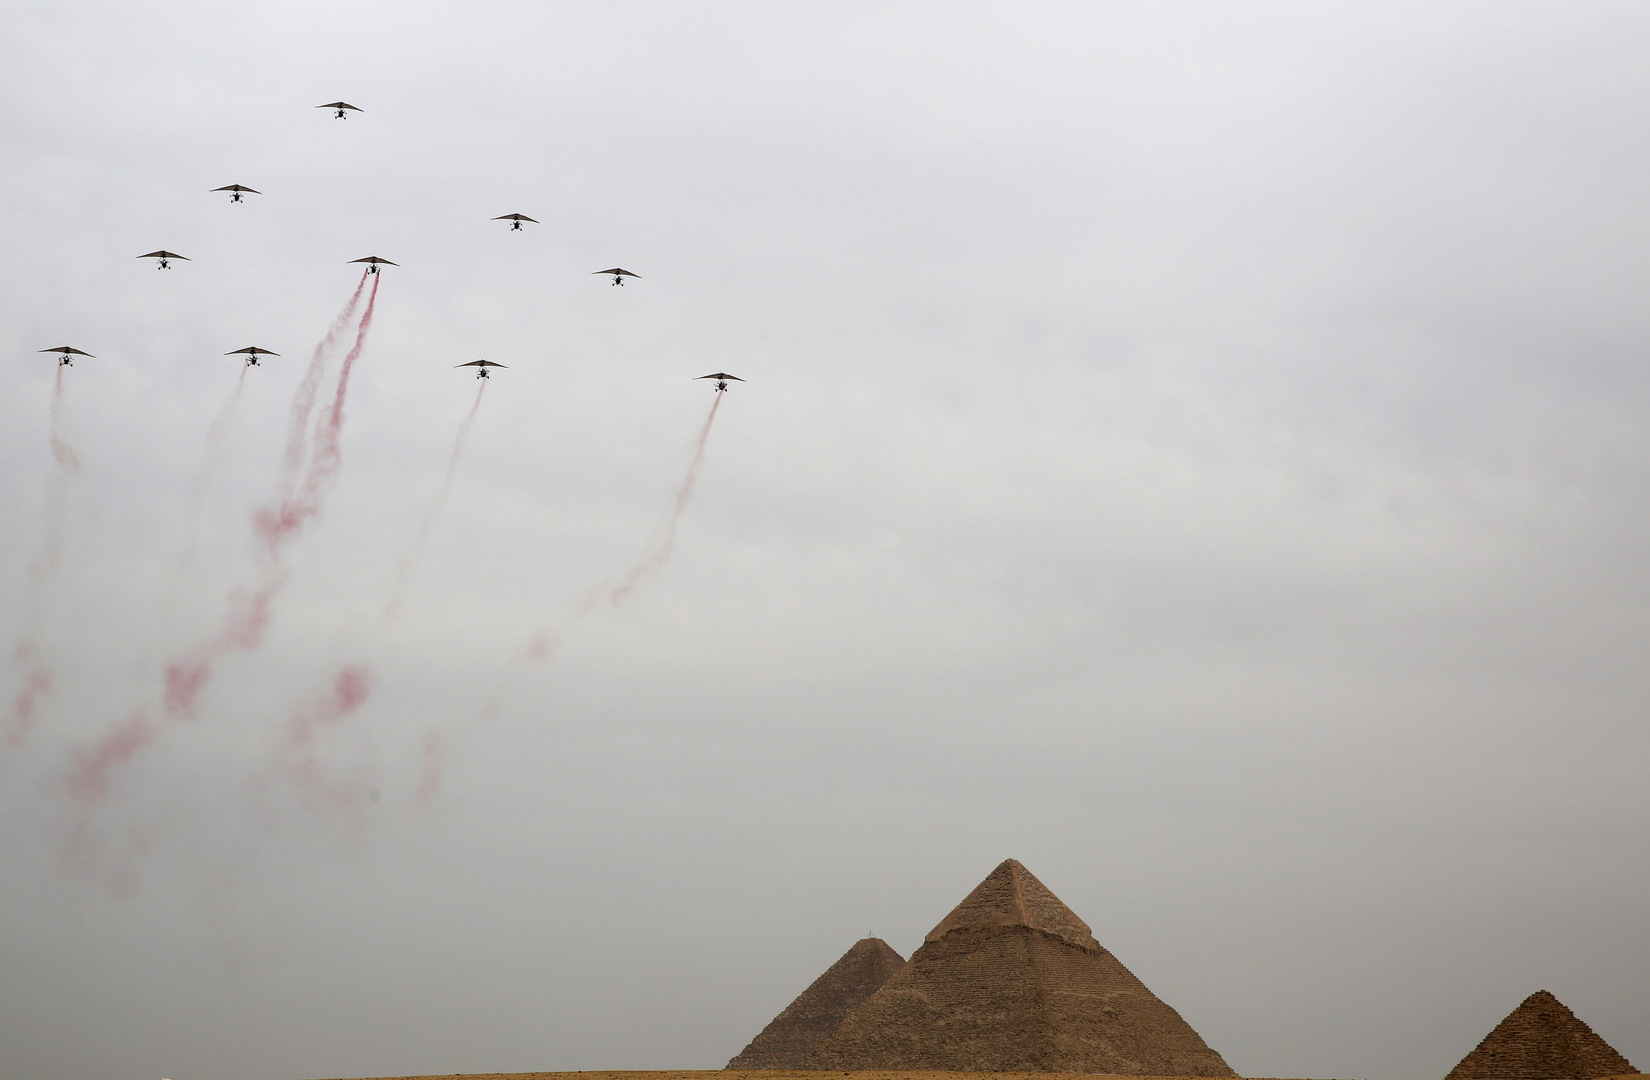 مصر تستعد لموكب عسكري مهيب غير مسبوق في تاريخ البلاد (صور)